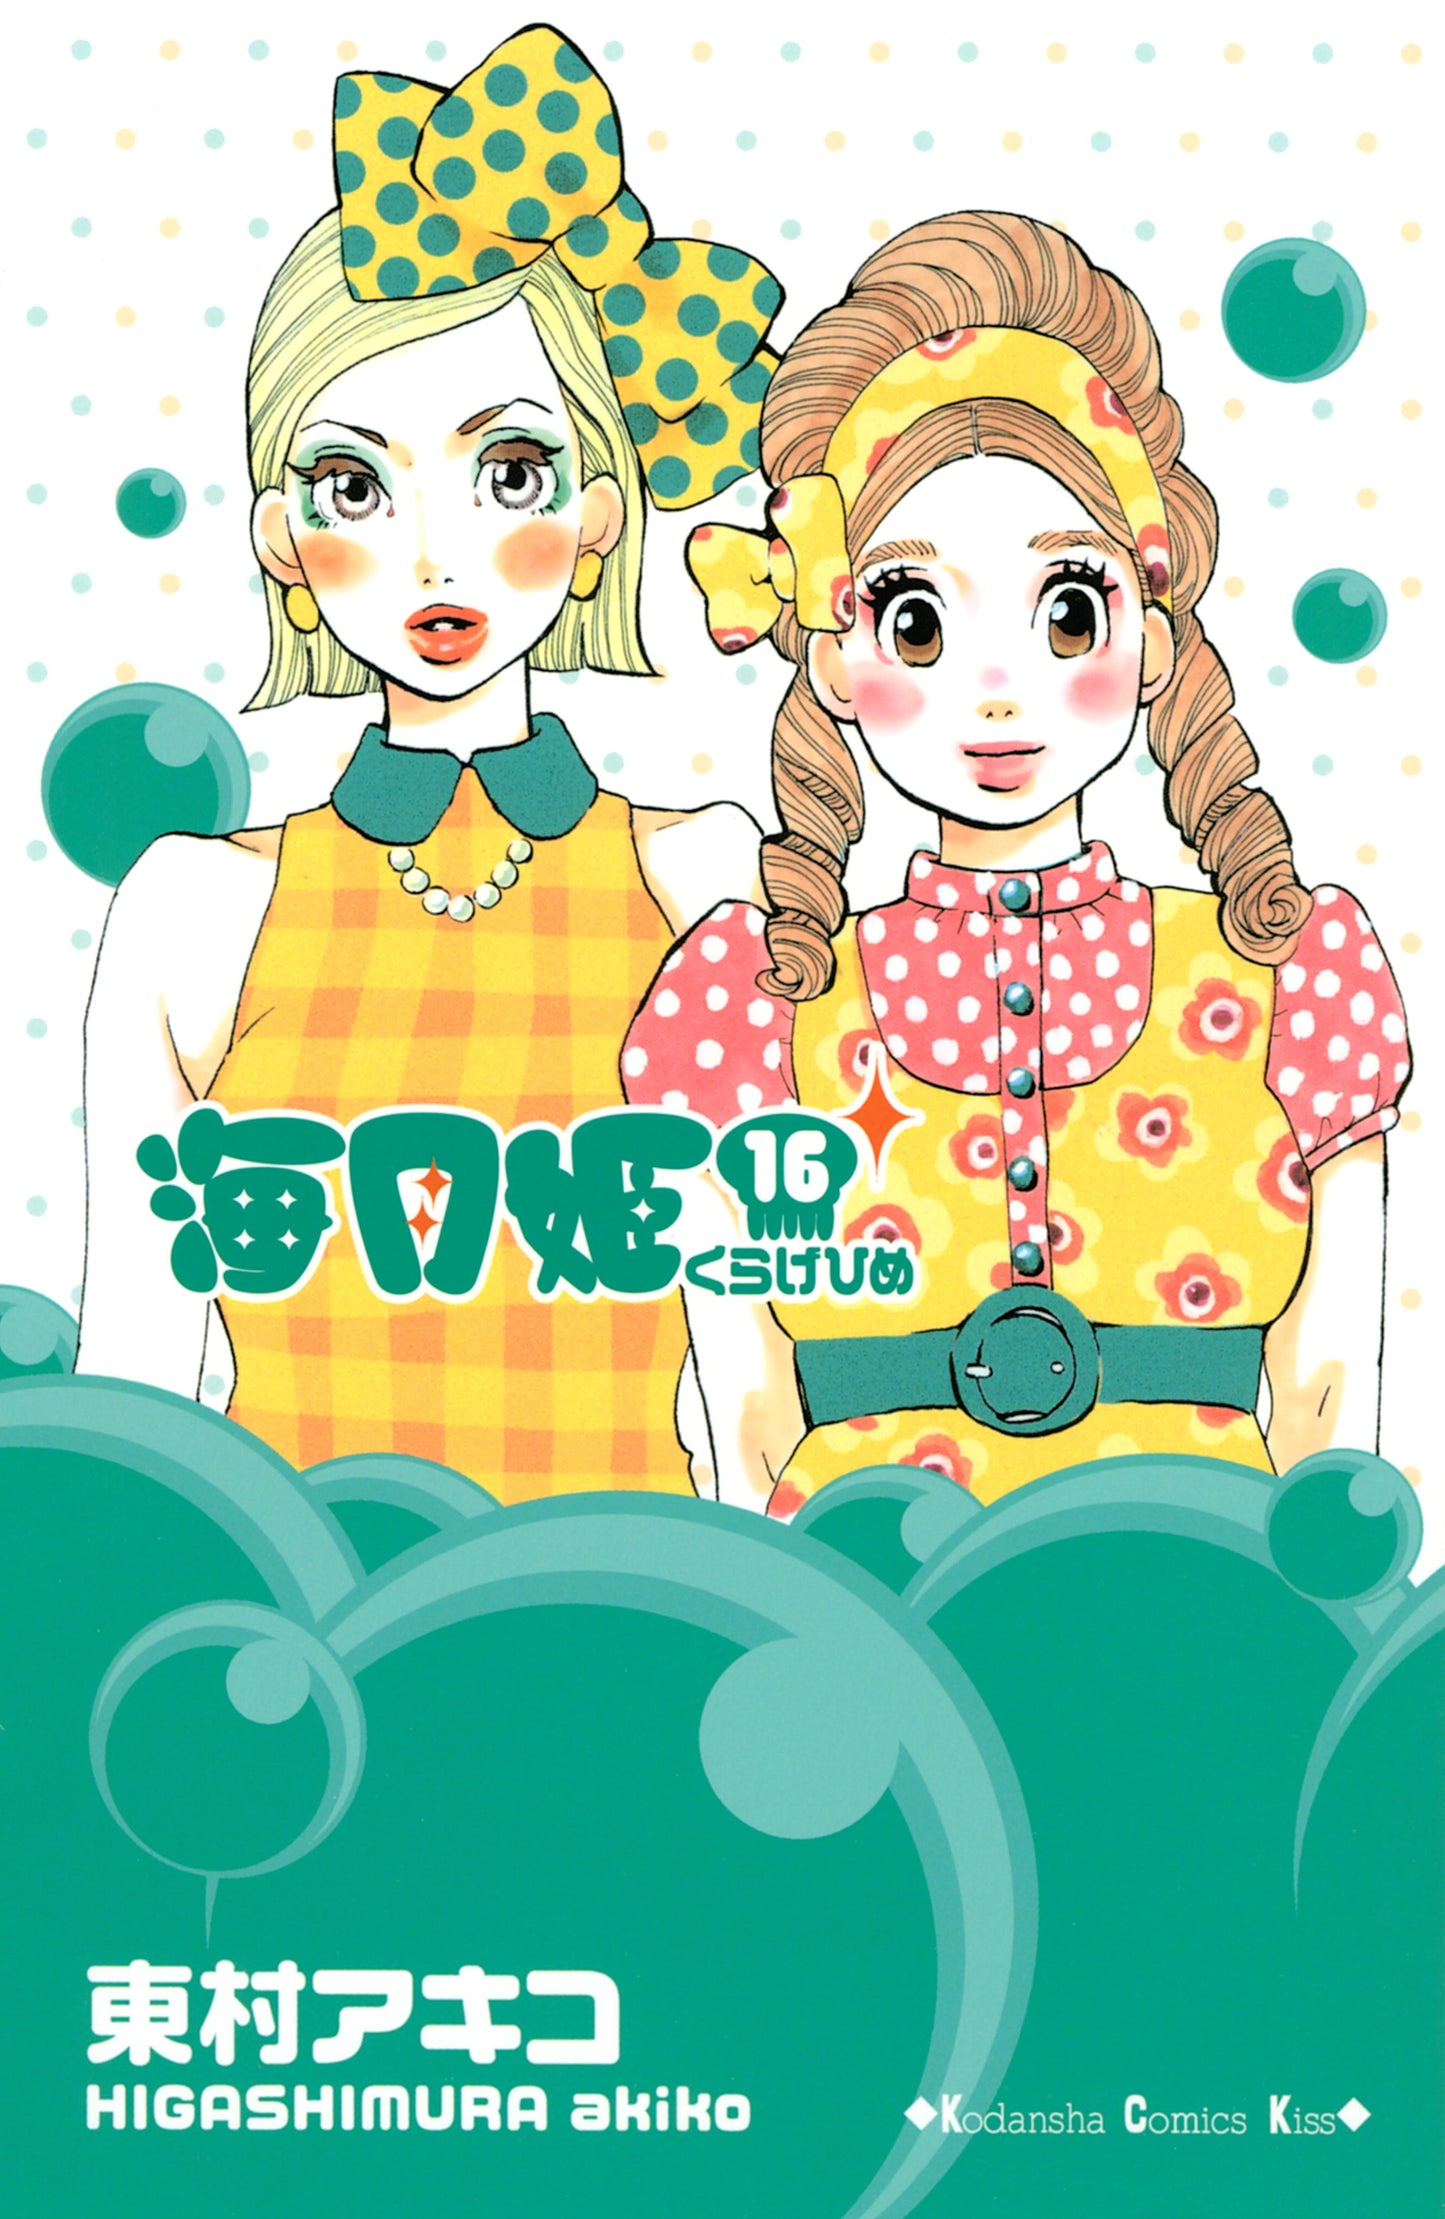 Princess Jellyfish 8 - Manga Warehouse